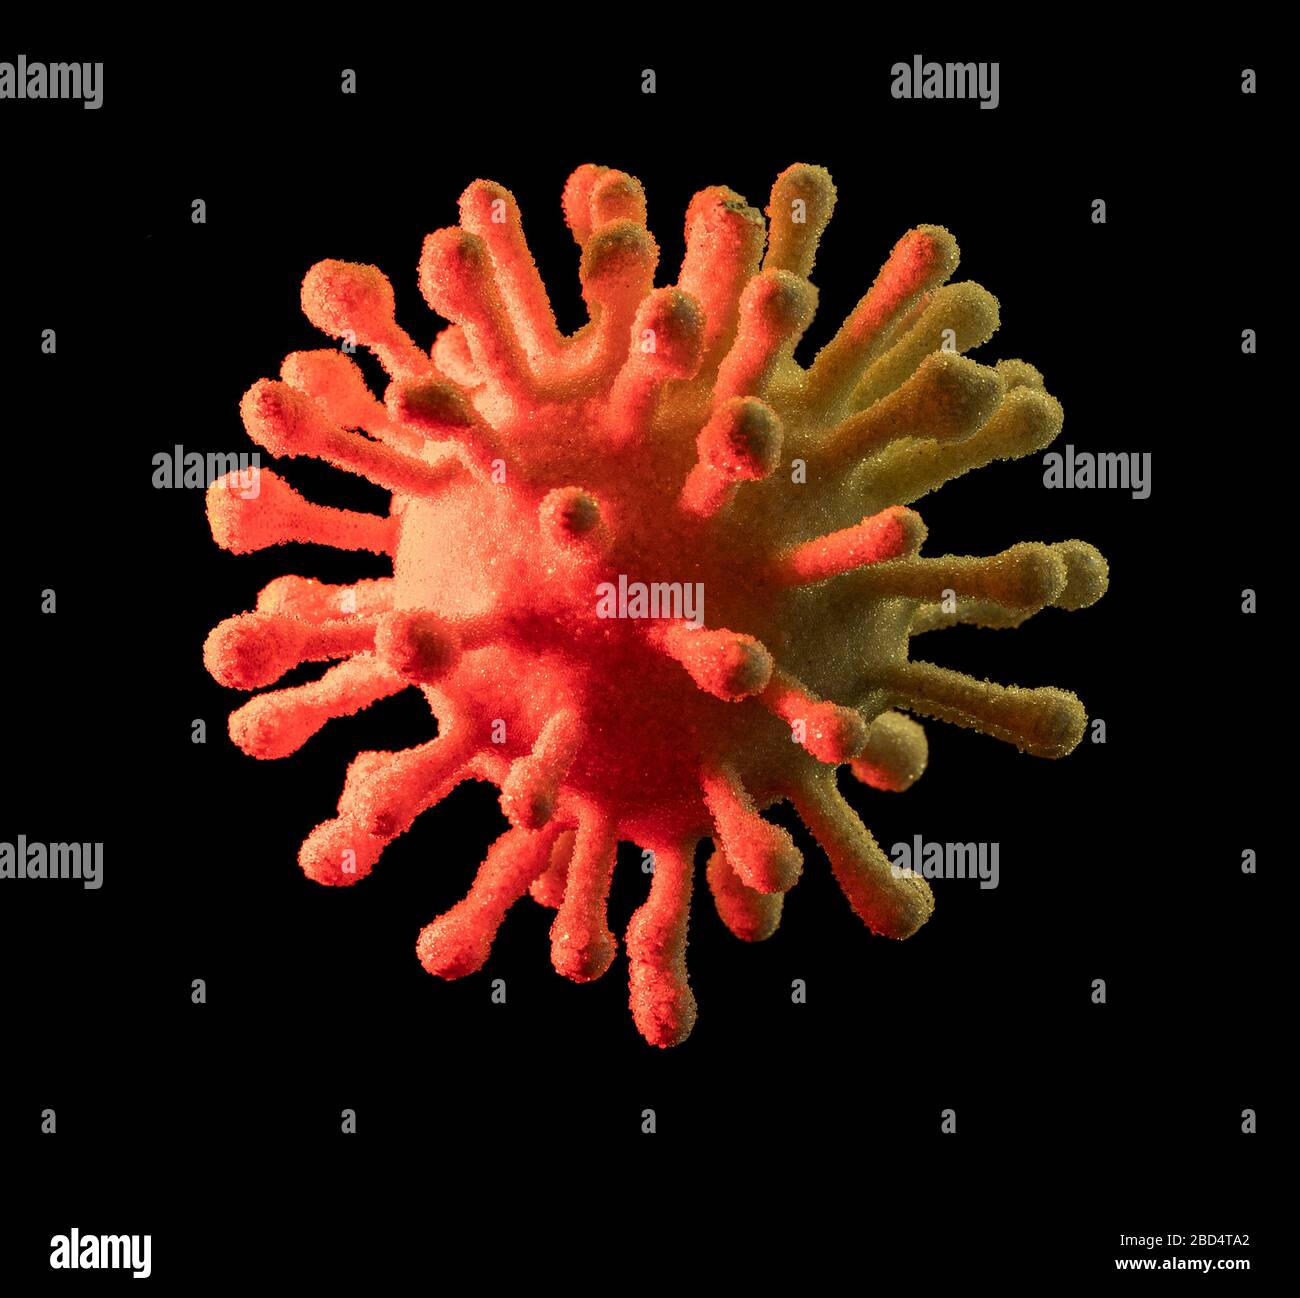 immagine di un colorato virus simbolico illuminato in nero sul retro Foto Stock